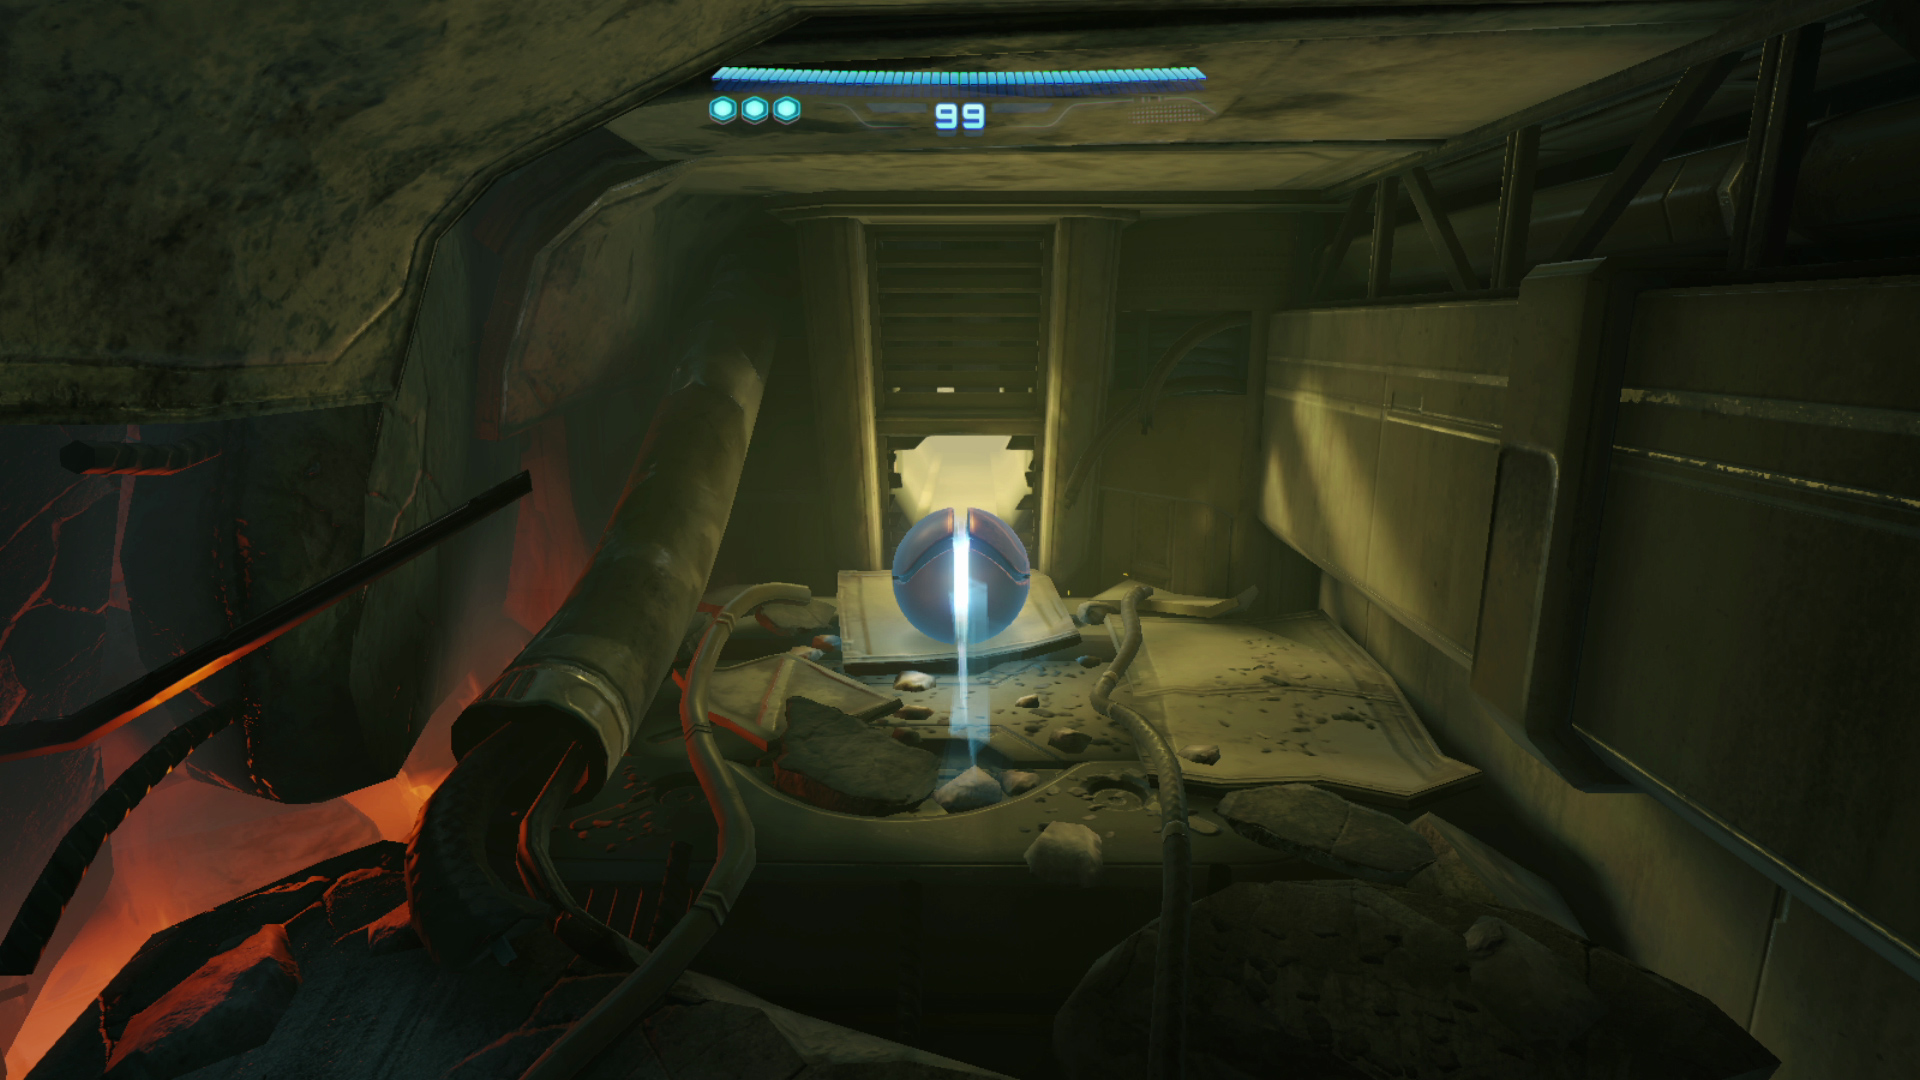 Metroid prime 4 beyond screenshot 8 7